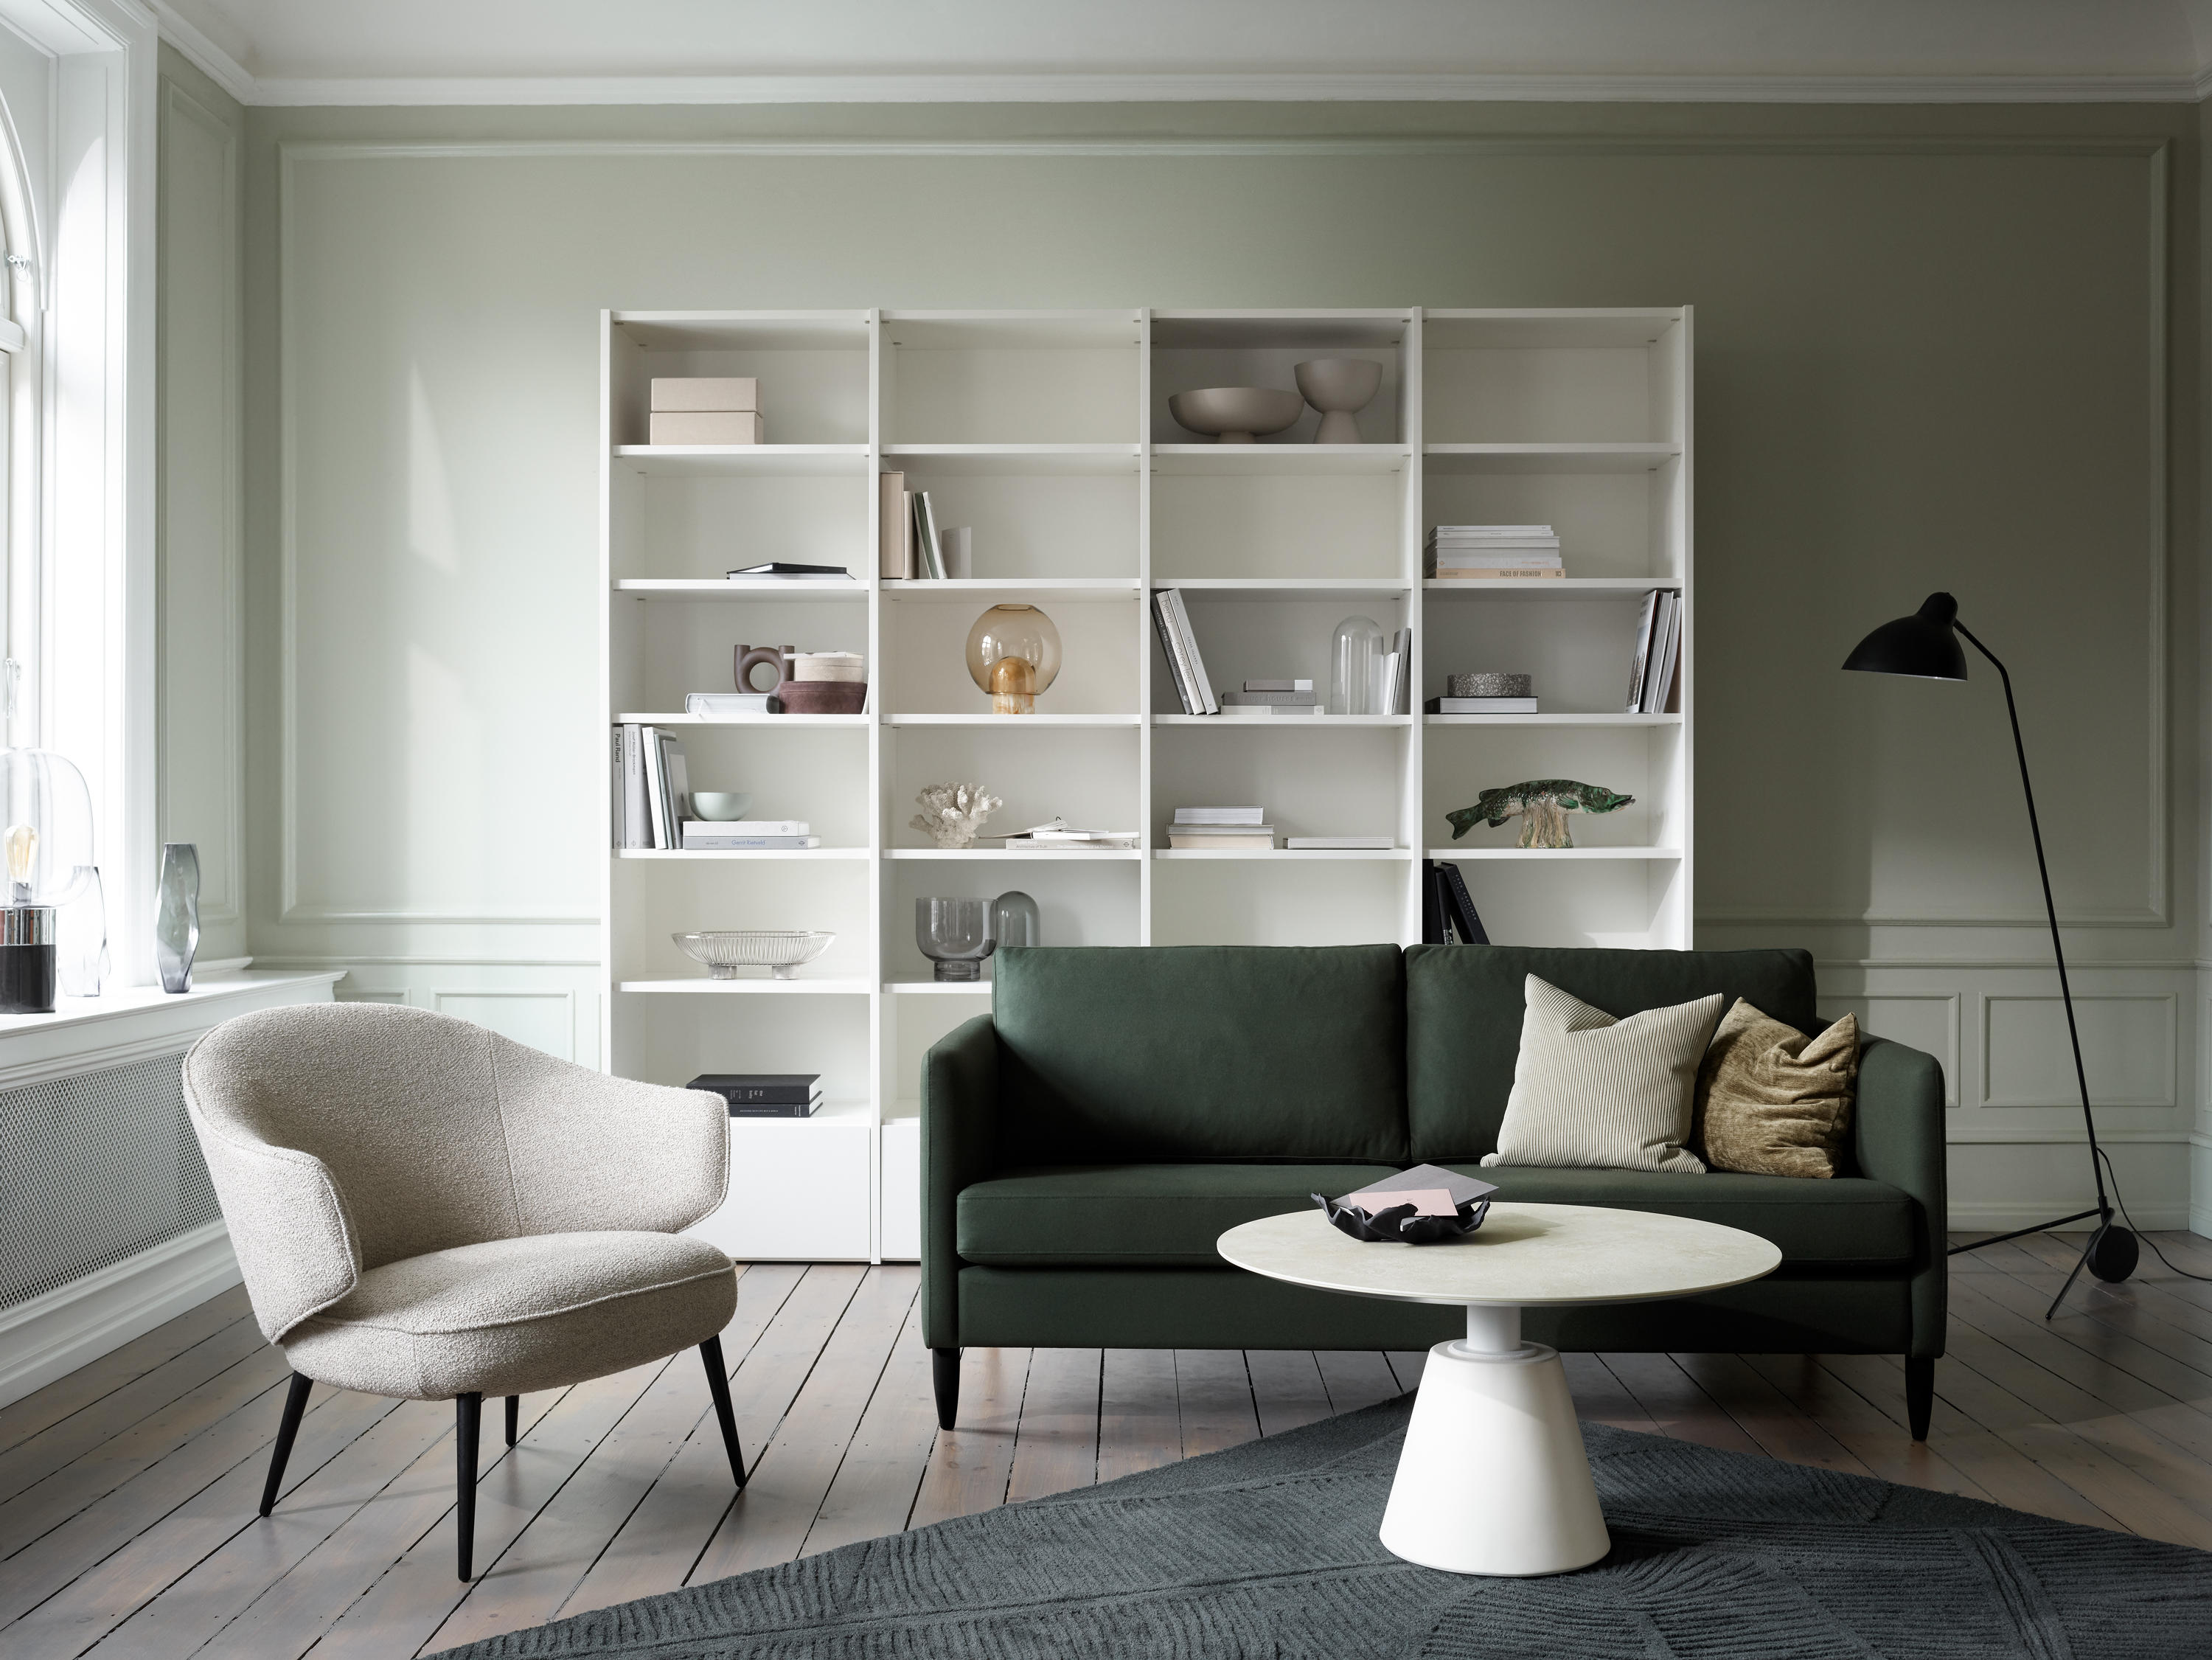 Indivi 3 Seater Sofa & designer furniture | Architonic